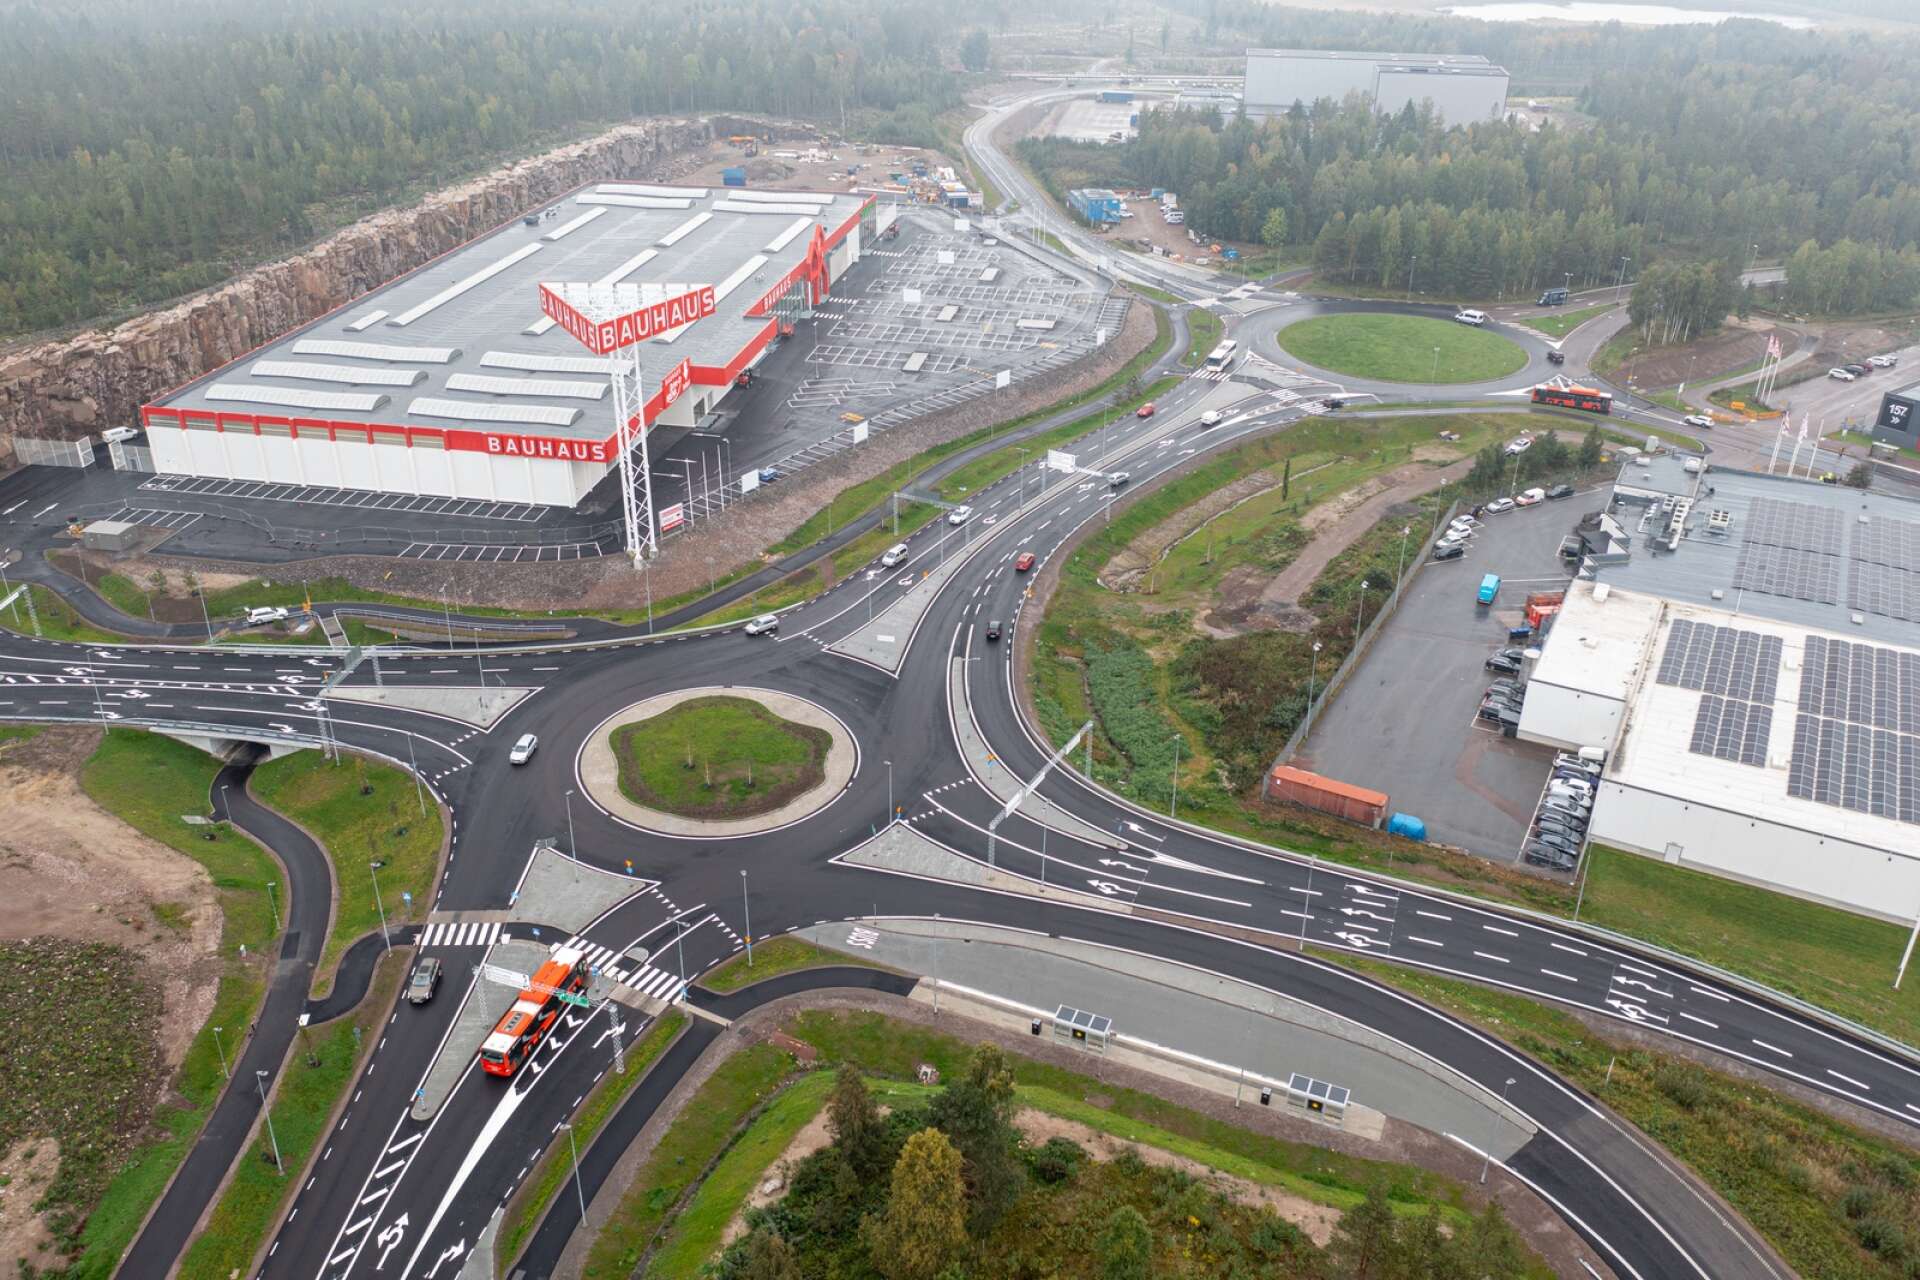 Under knappt 1,5 års tid har Karlstads kommun byggt ut trafiksystemet i Välsviken för att förbättra framkomligheten. Bland annat har det anlagts en stor rondell i korsningen Välsviksleden/avfarten från E18. Totalt har cirka 70 miljoner kronor investerats i projektet.